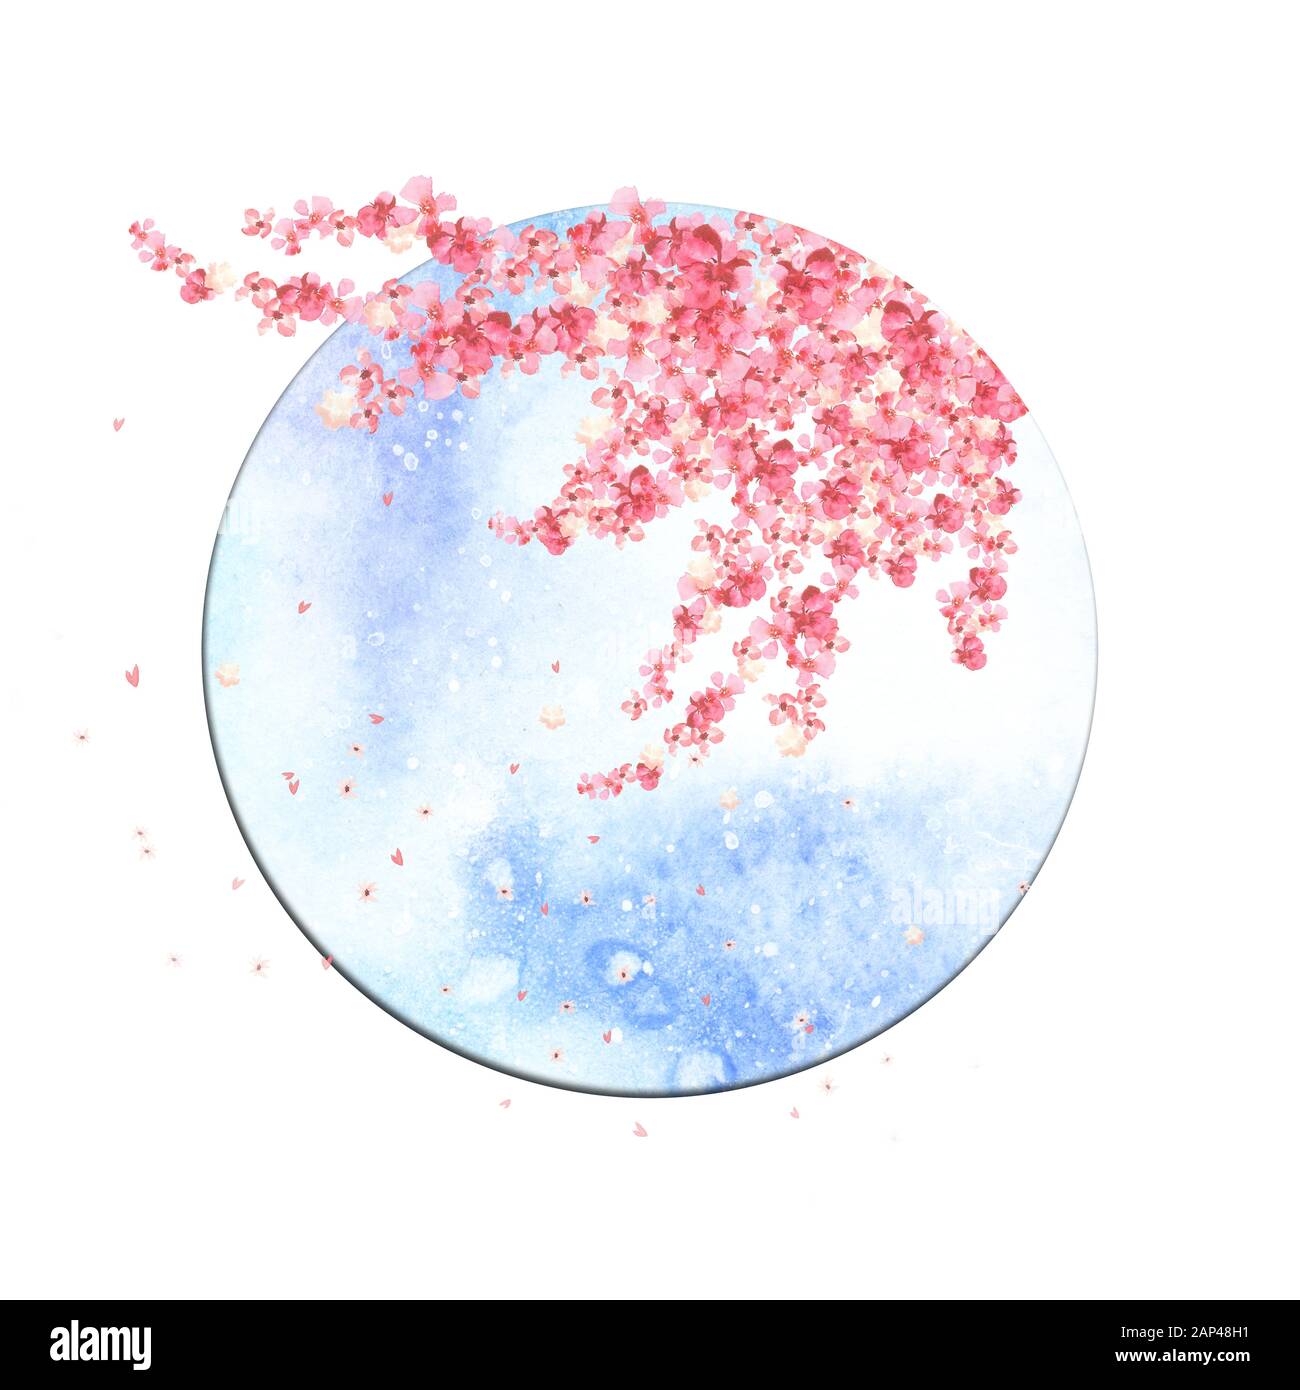 fleurs d'arbre sakura en aquarelle fleuries à l'intérieur d'un cadre rond avec ciel bleu Banque D'Images